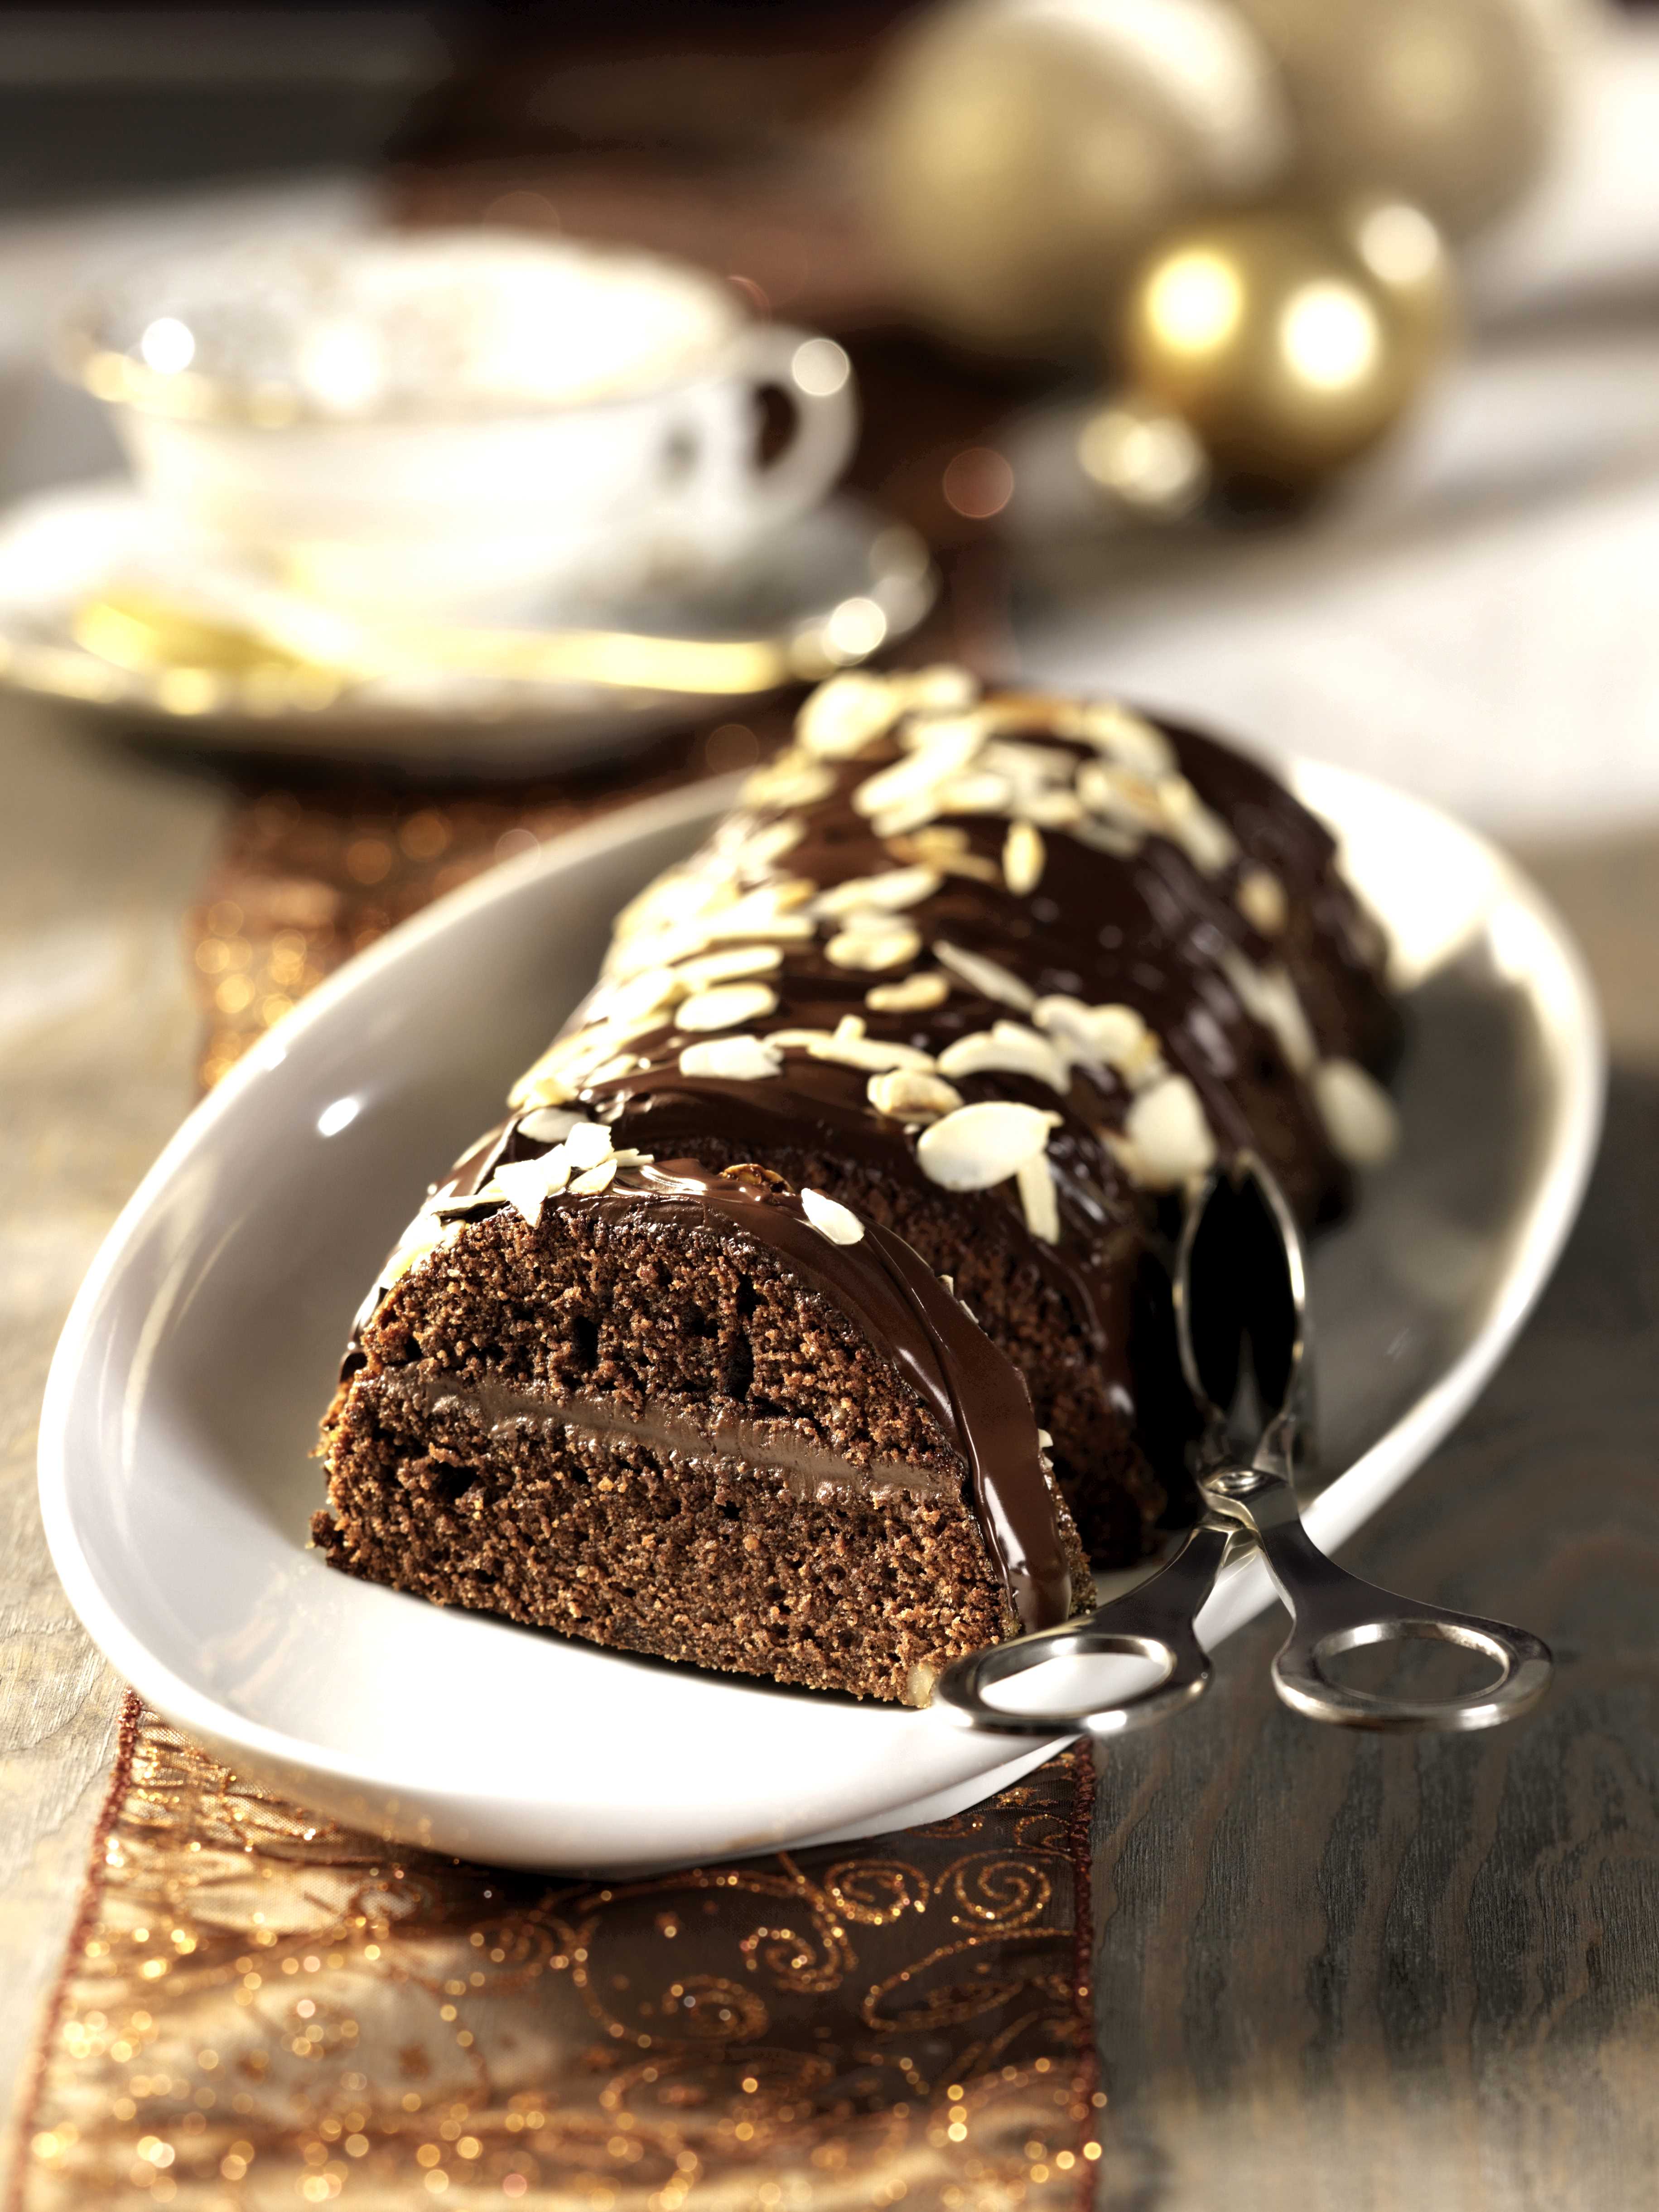 Dolci Di Natale Con Il Bimby.Ricetta Torta Di Noci Con Ripieno Al Cioccolato Con Il Bimby Agrodolce